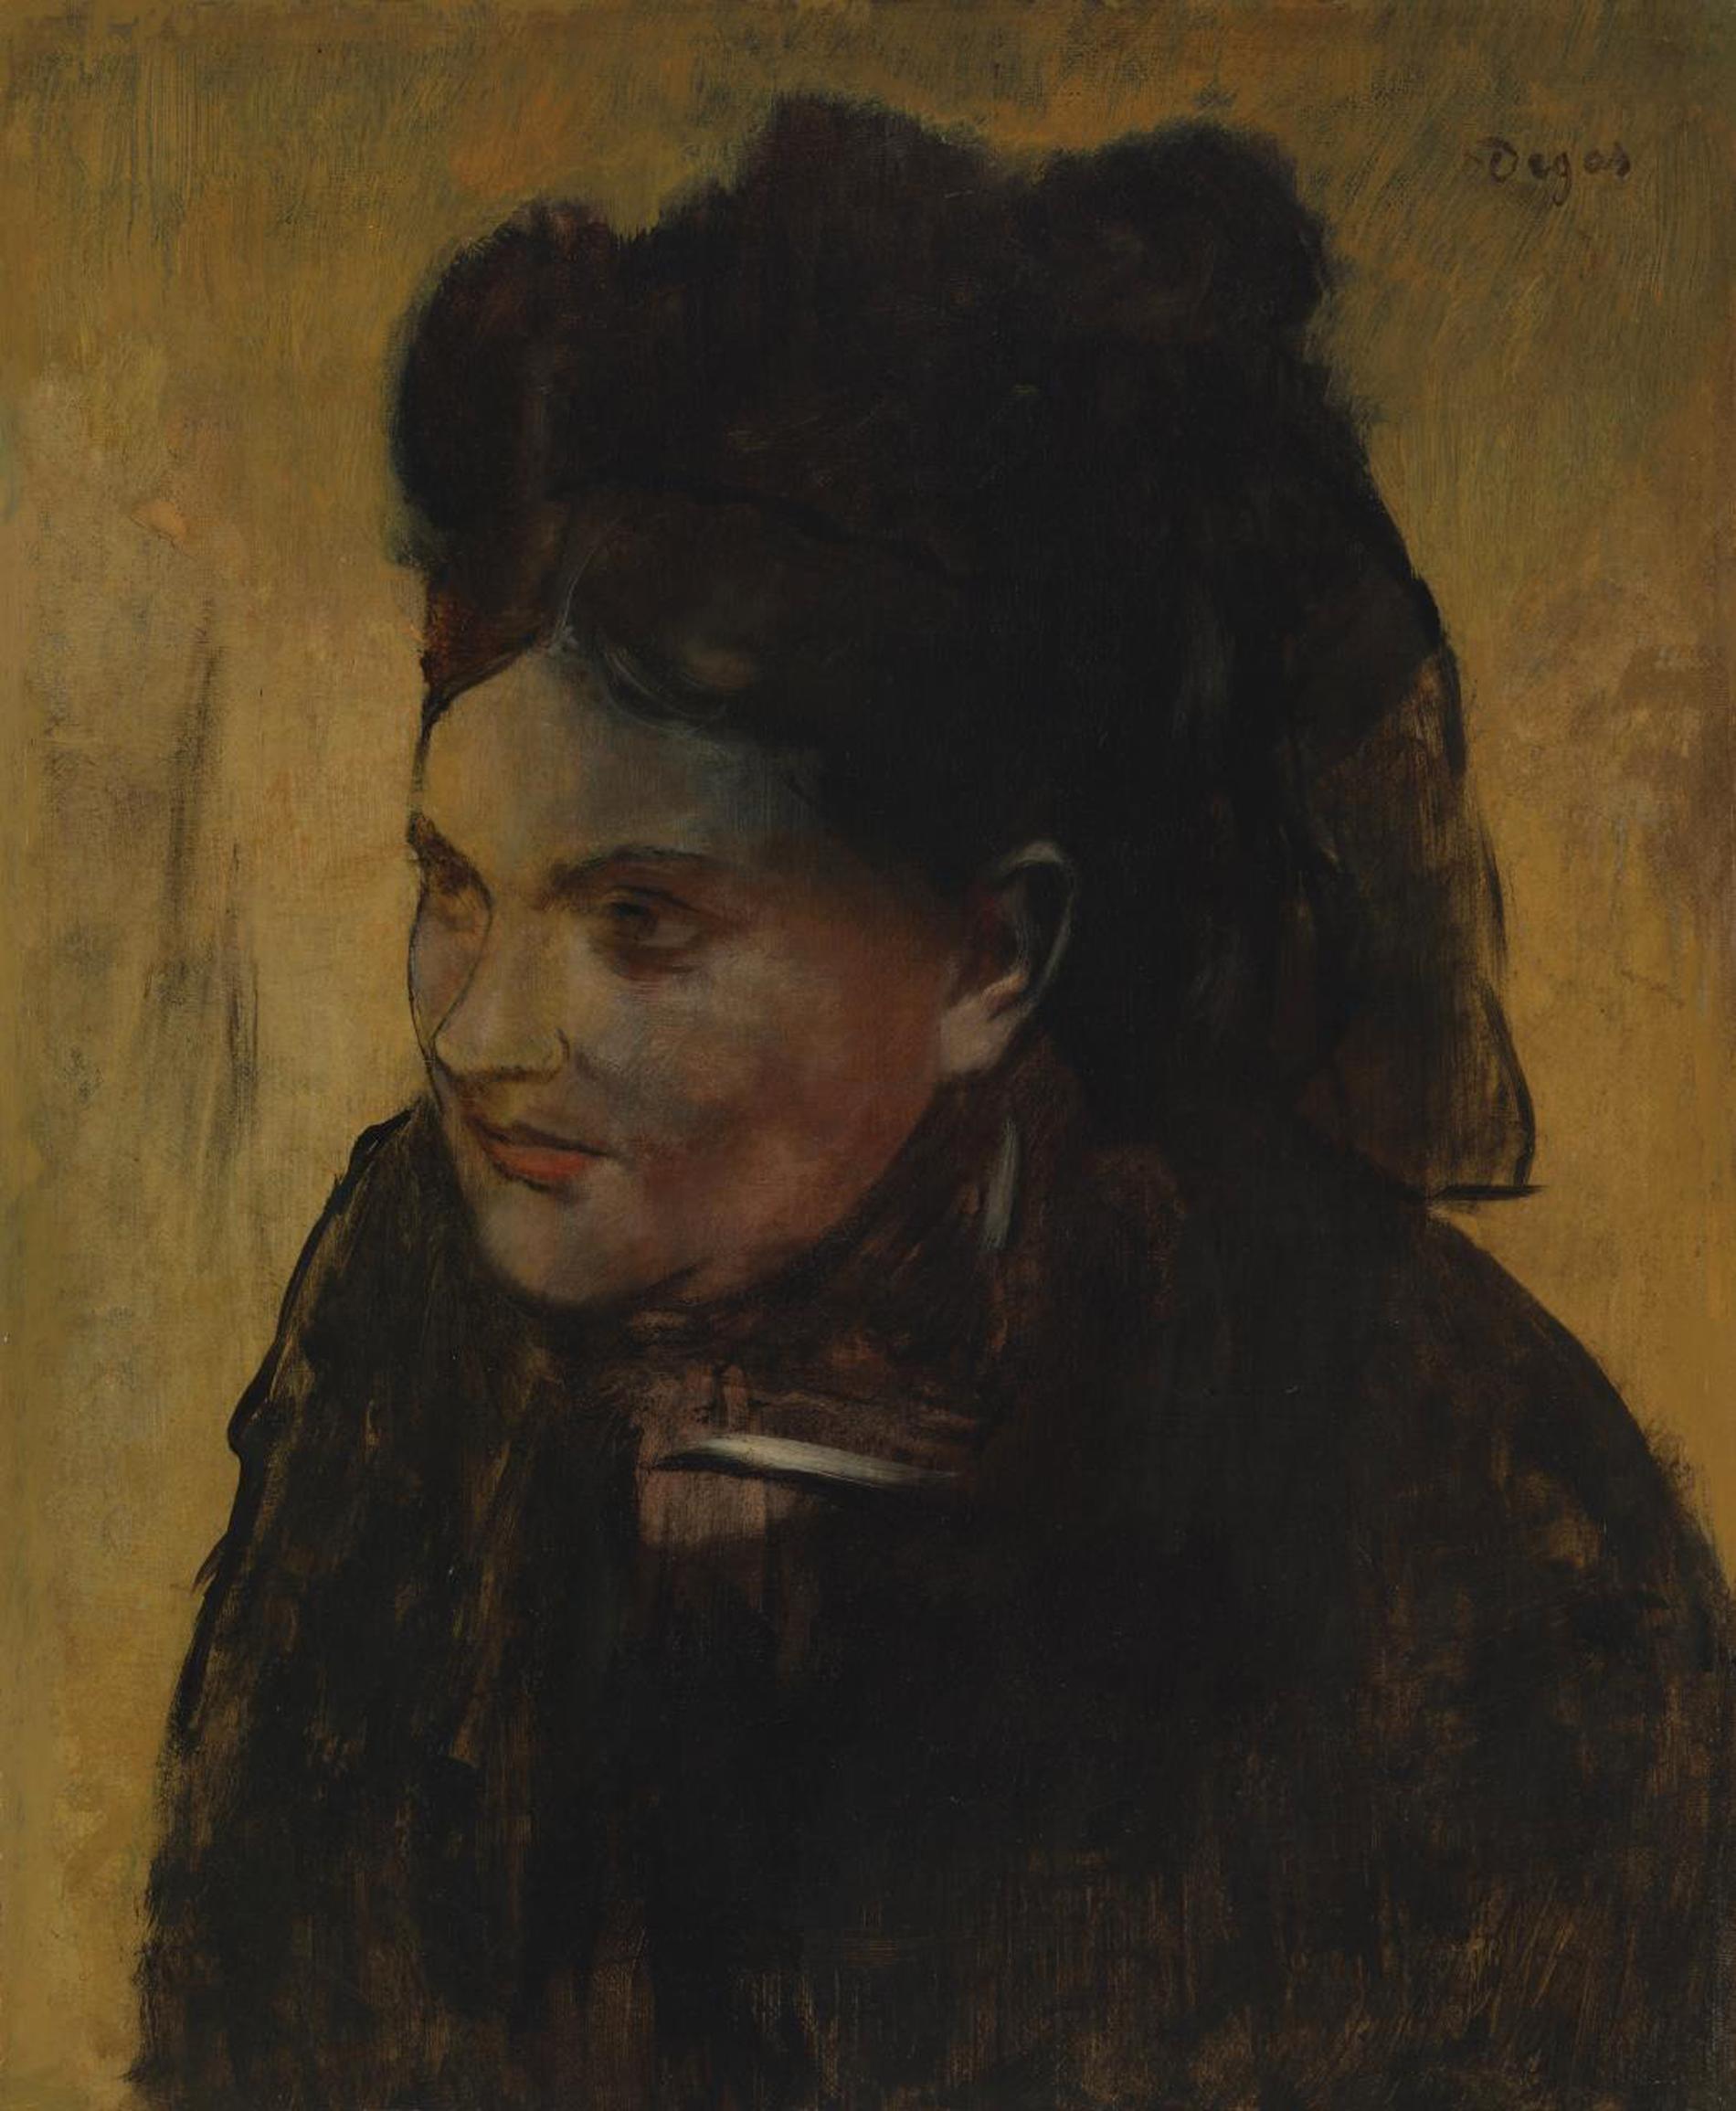 Ju mer färgen på den franske impressionisten Edgar Degas kvinnoporträtt tunnades ut, desto tydligare framträdde konturerna av en annan tavla.